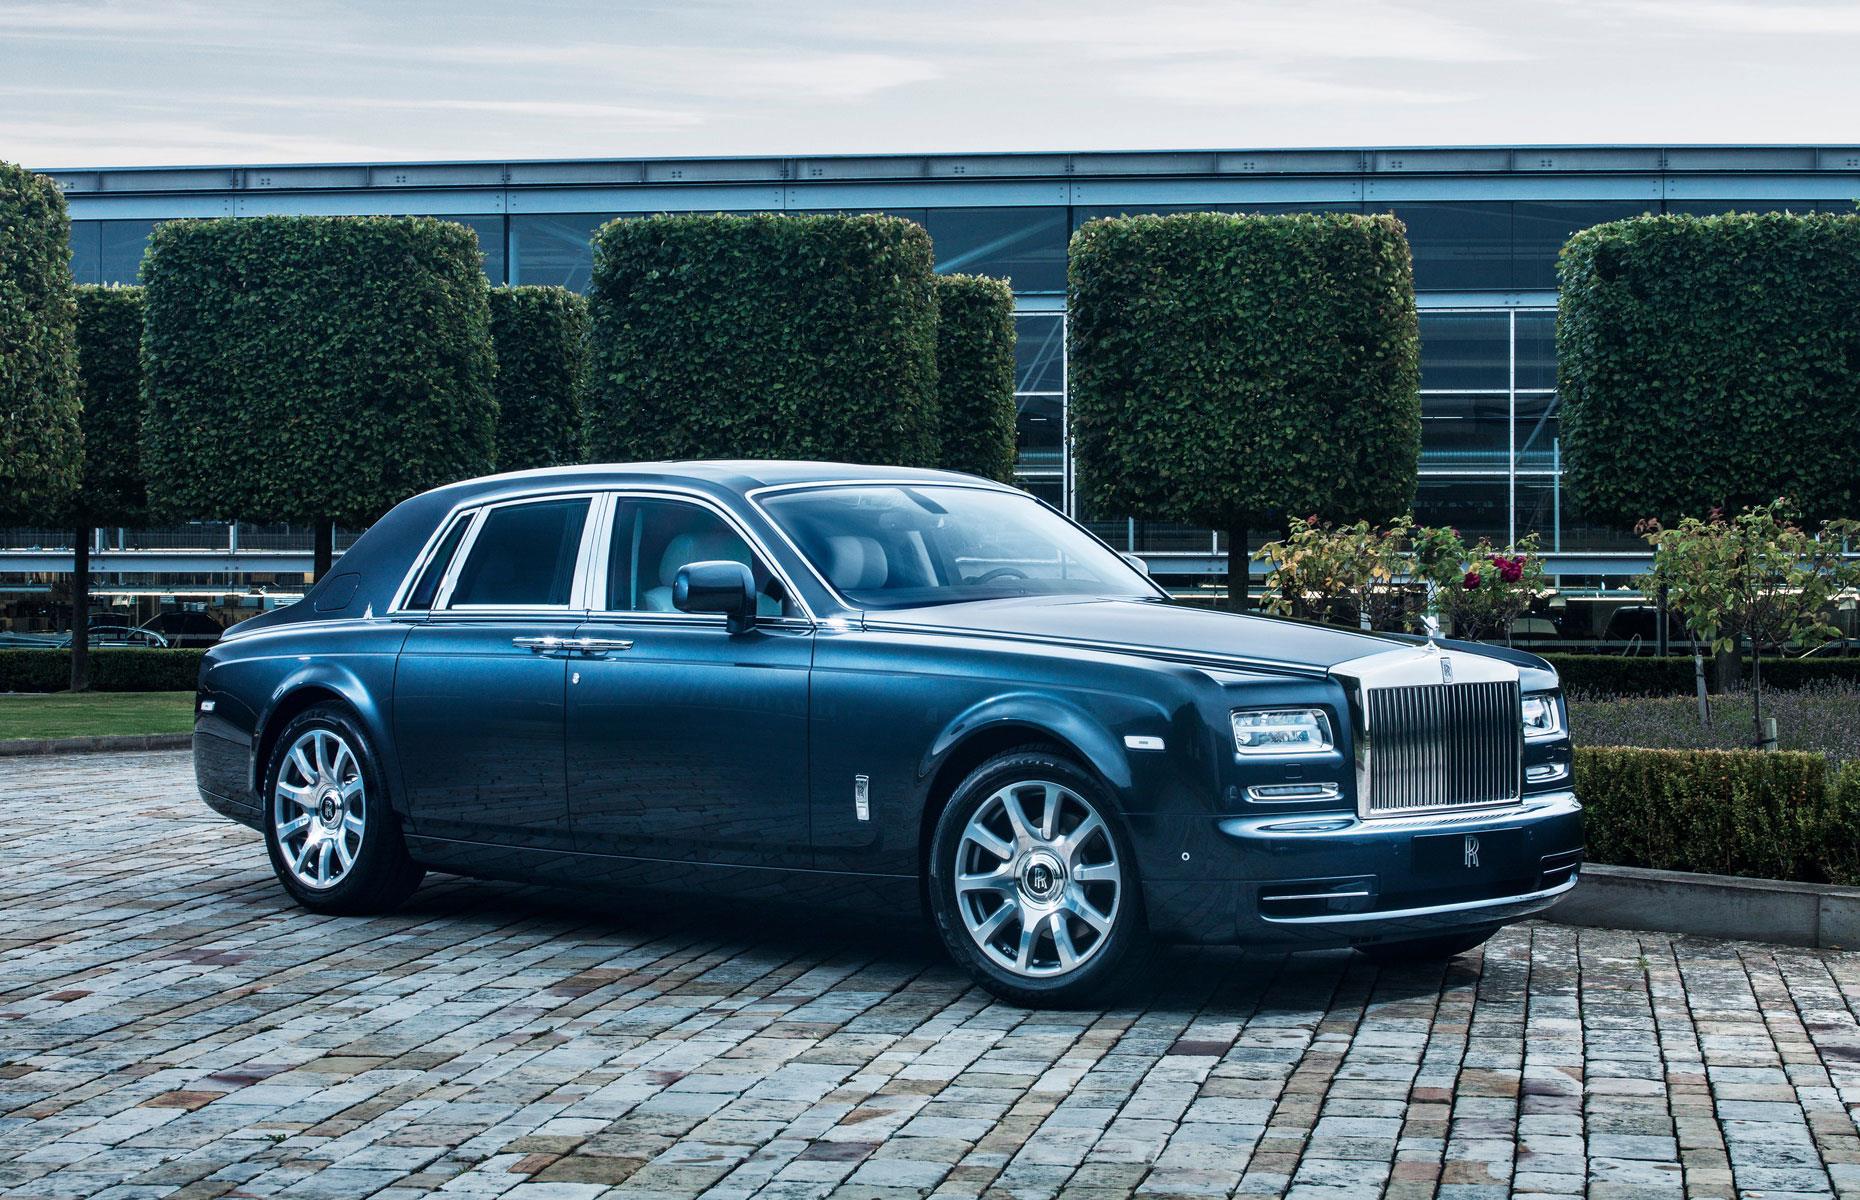 Nun zu den Luxusautos der Superreichen. Ein Klassiker ist der Rolls-Royce Phantom (Baujahr 2015) von Donald Trump, für den der Milliardär vermutlich um die 500.000 US-Dollar (447.000 Euro) bezahlt hat. Der Phantom ist die richtige Wahl für jeden Superreichen, der traditionelle Eleganz schätzt, und auch das teuerste Auto in Trumps Sammlung.